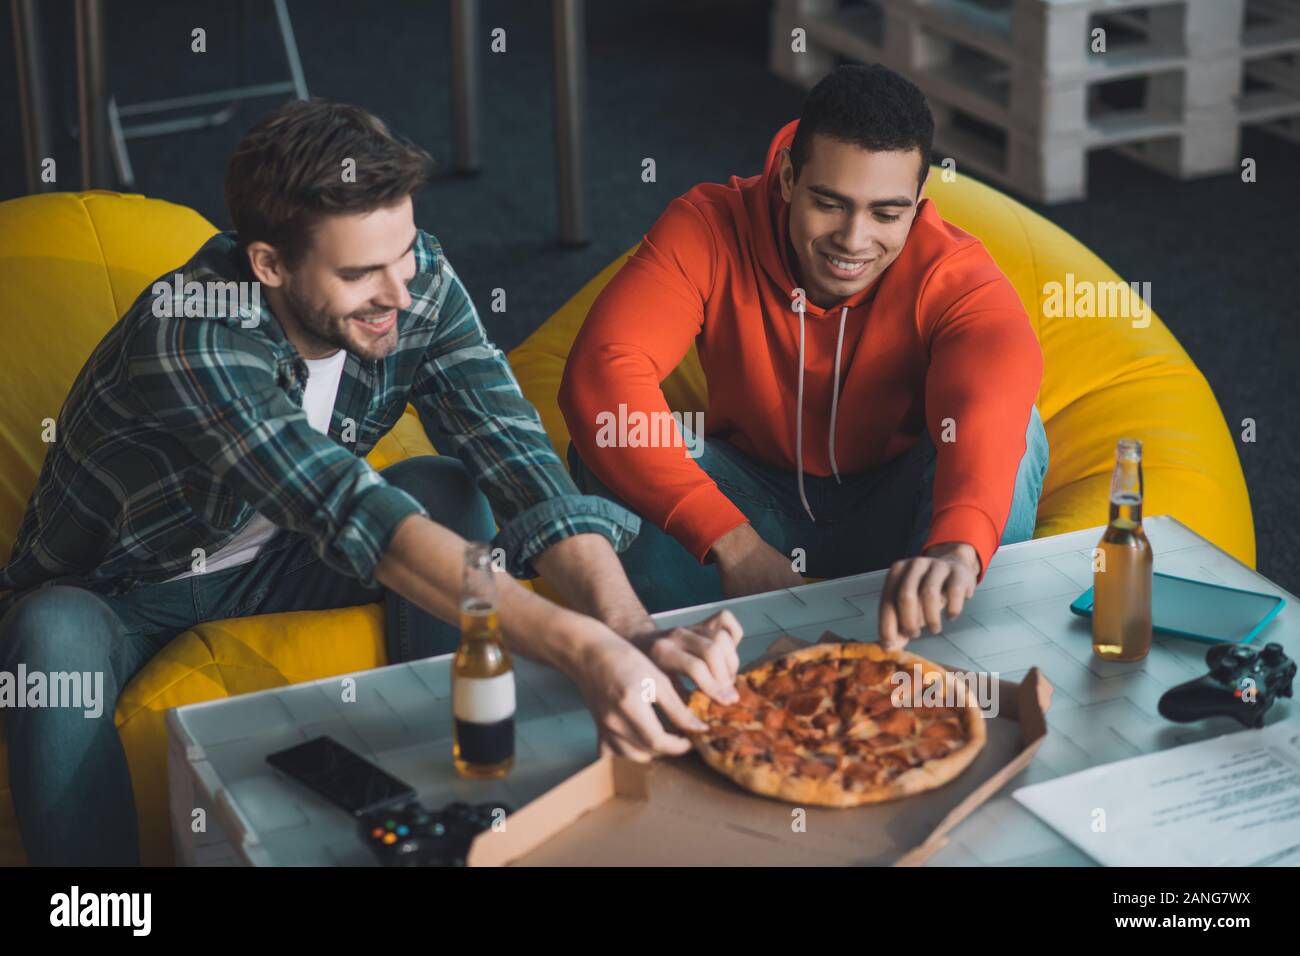 Belli gli uomini affamati prendendo pezzi di pizza Foto Stock